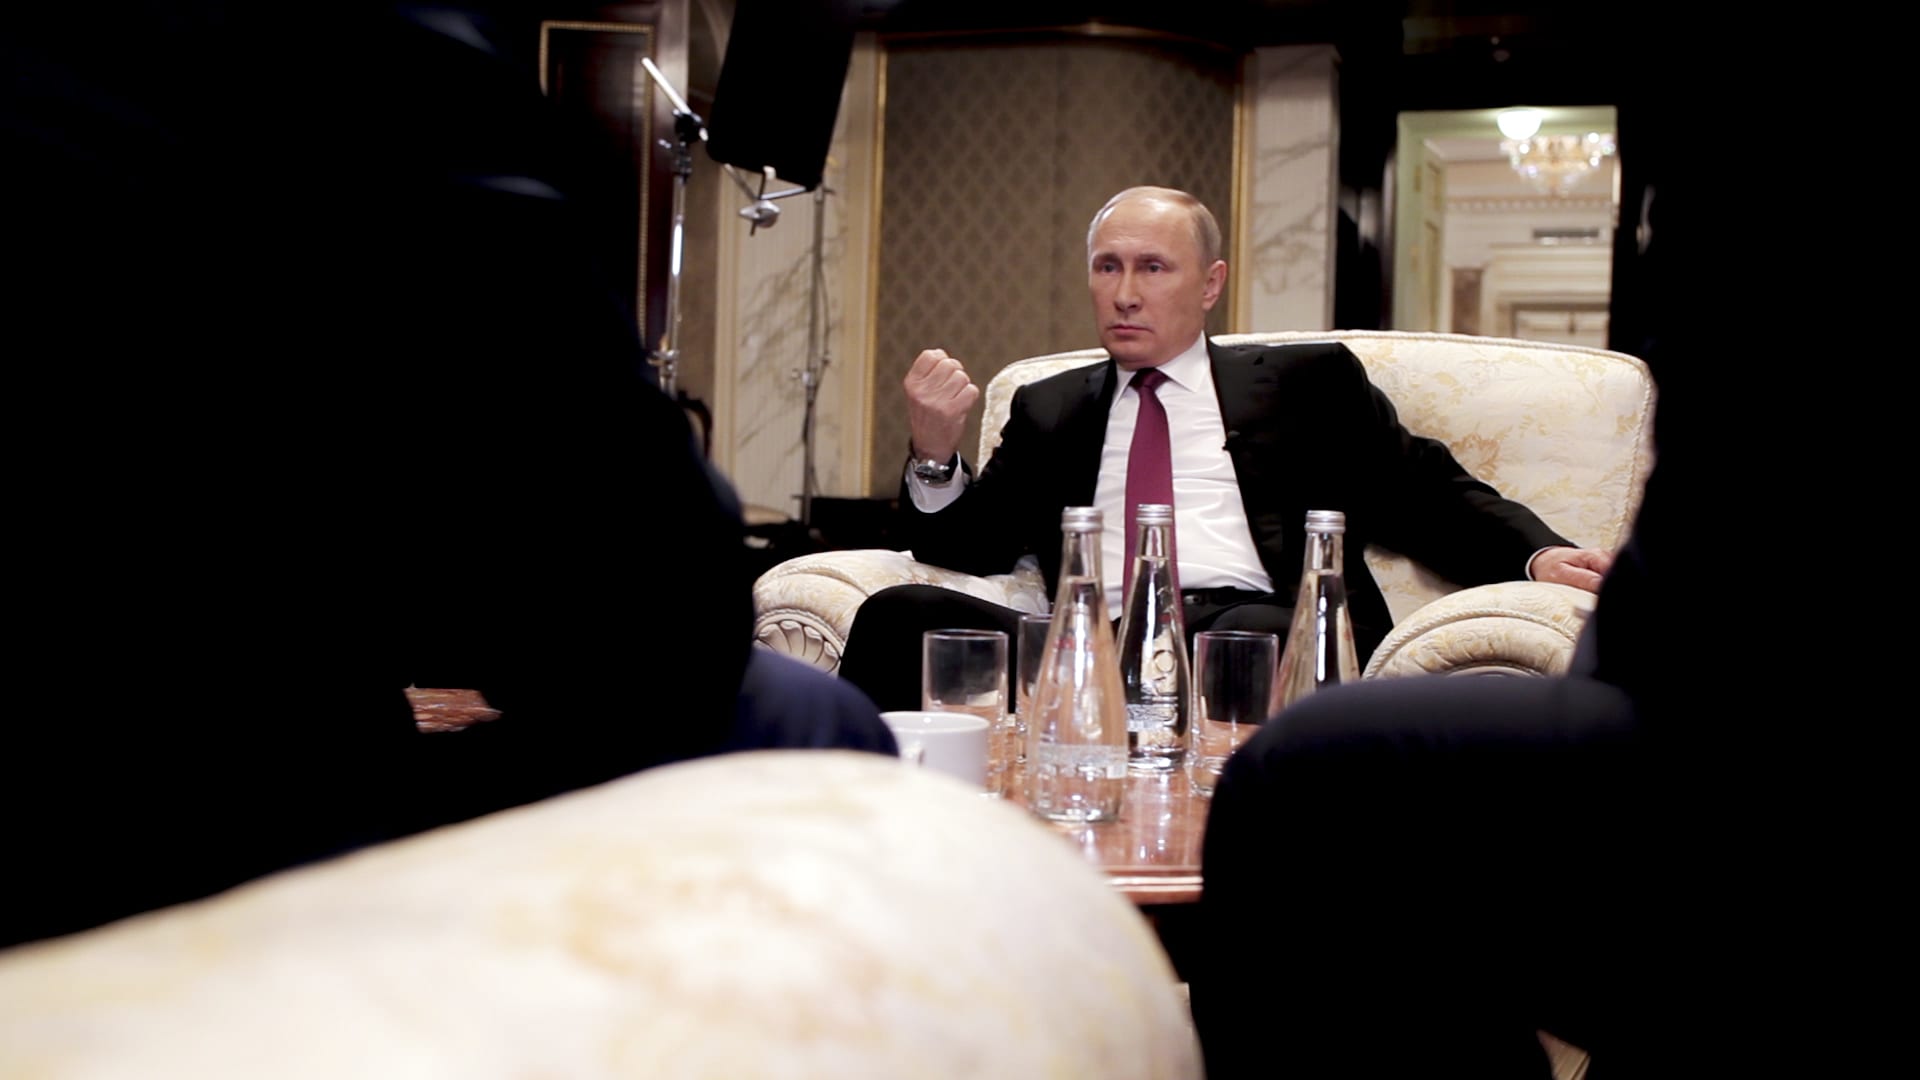 Vladimir Putin v rozhovoru s Oliverem Stonem